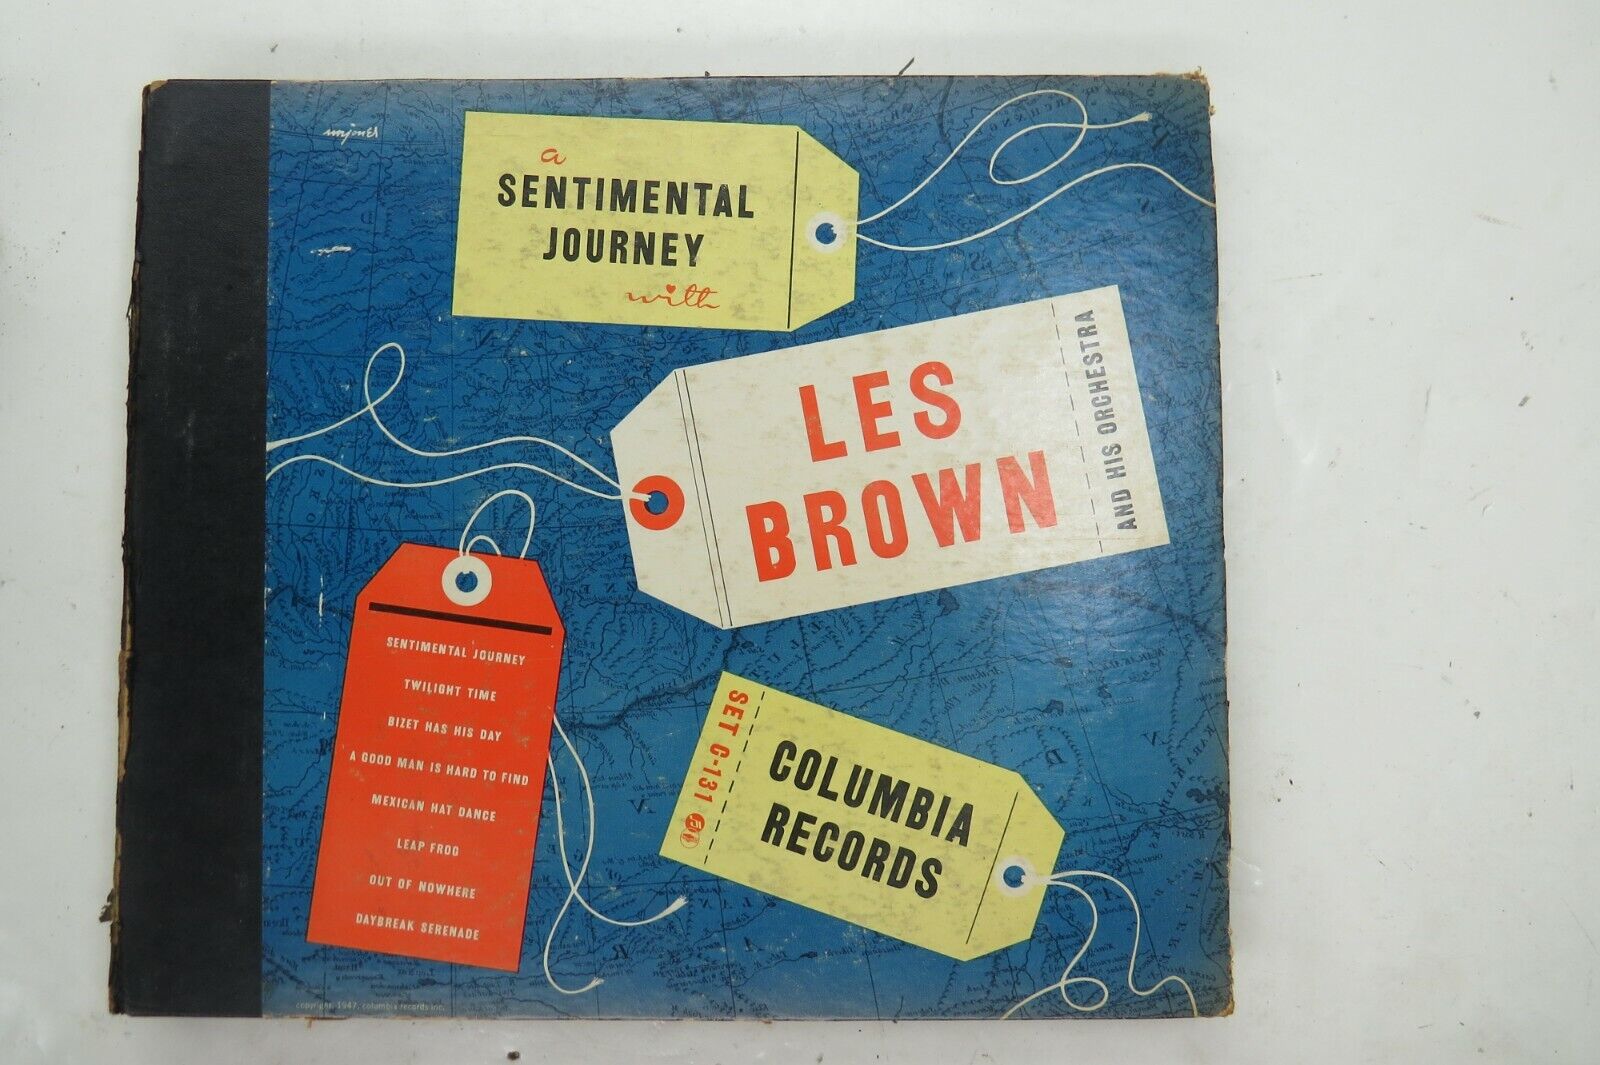 Les Brown - COLUMBIA ALBUM C-131 - A Sentimental Journey - 4x78 RPM